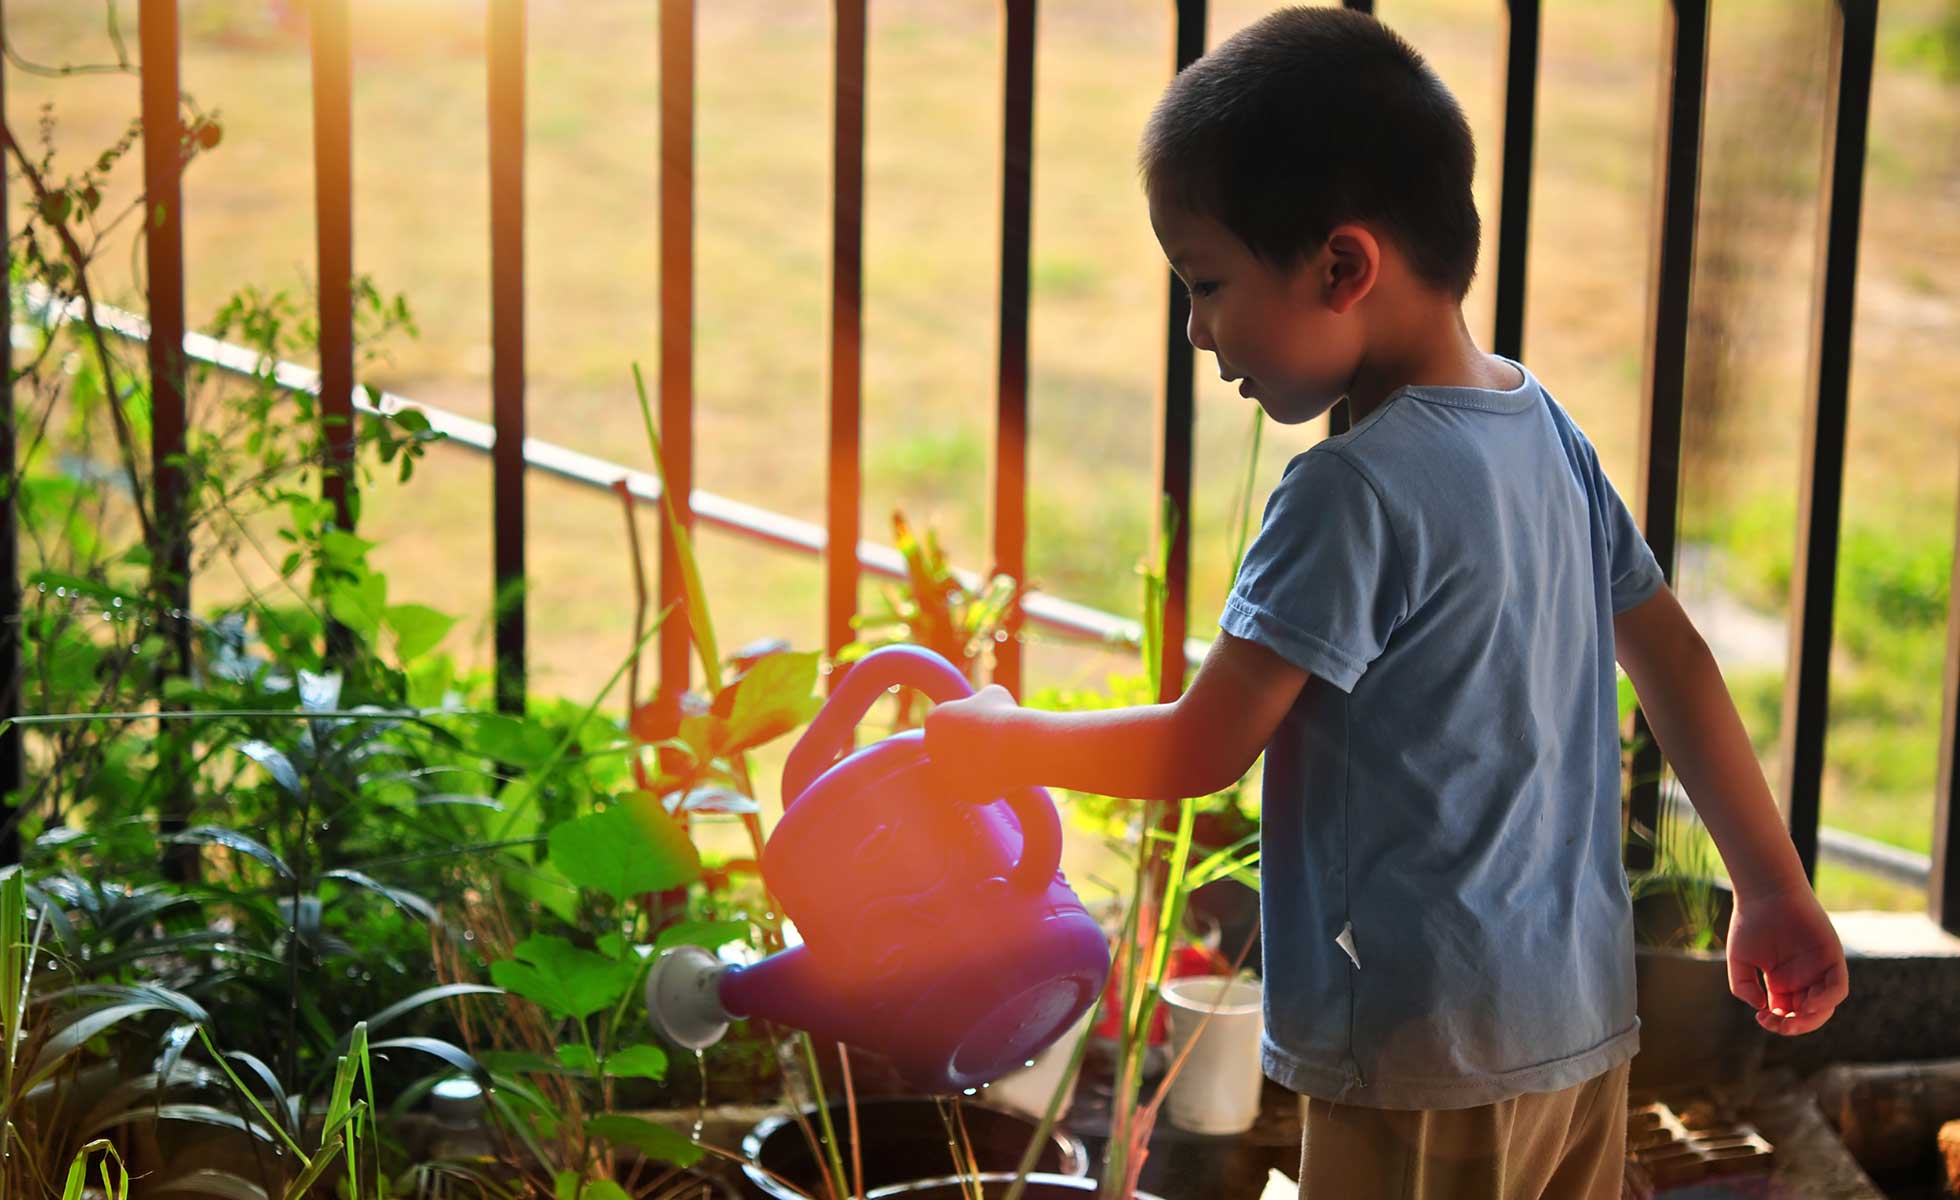 Child gardening